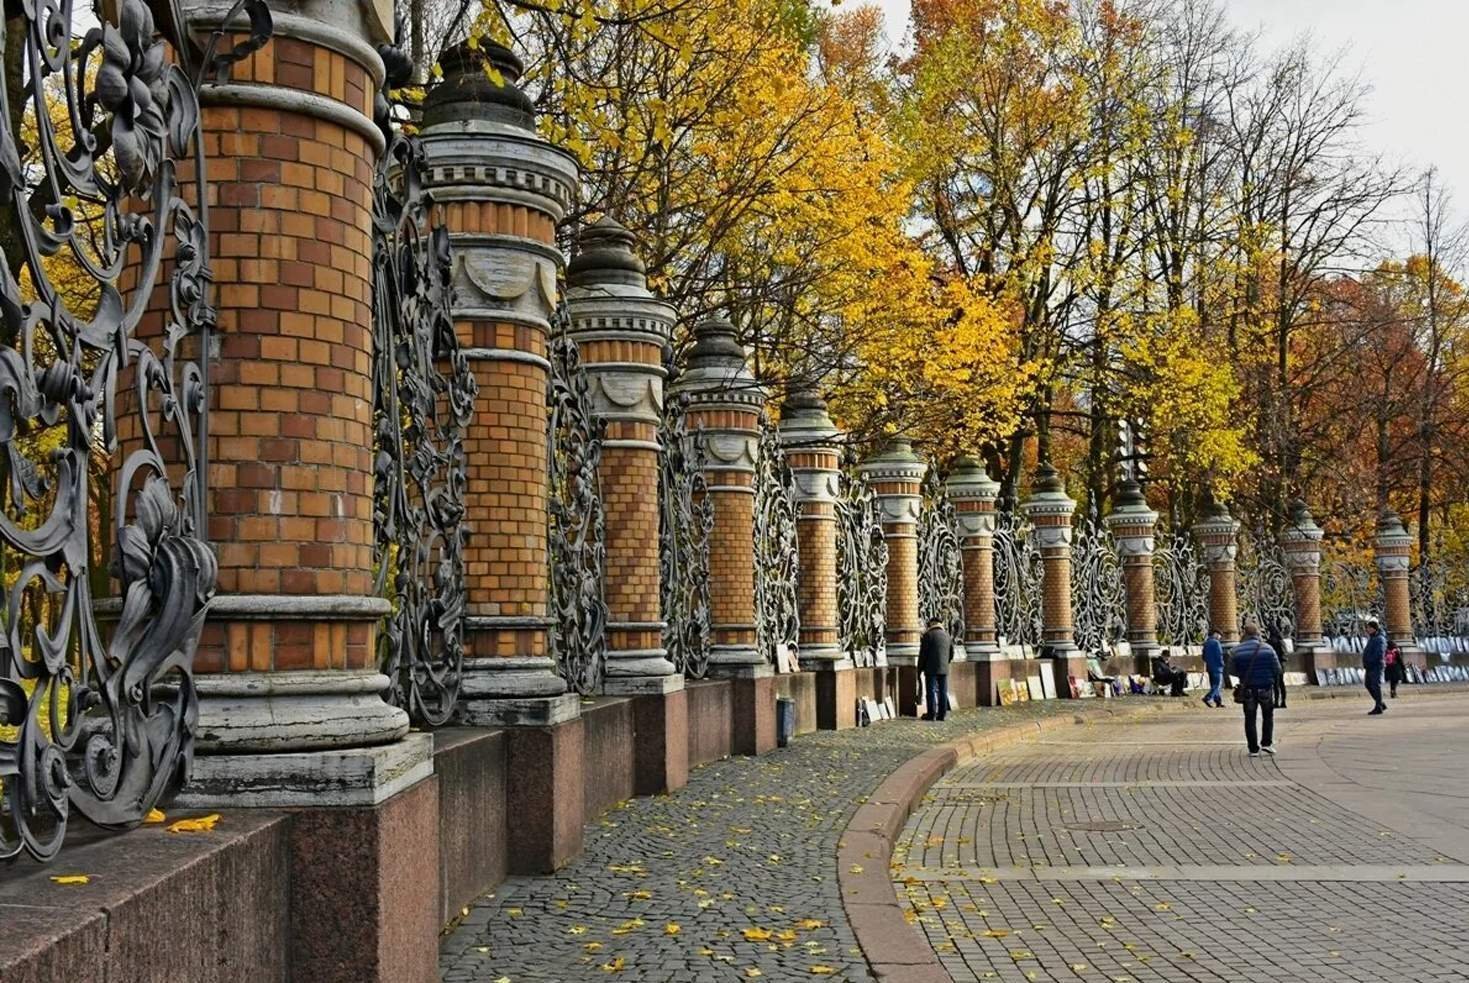 Фото михайловского сада в санкт петербурге фото